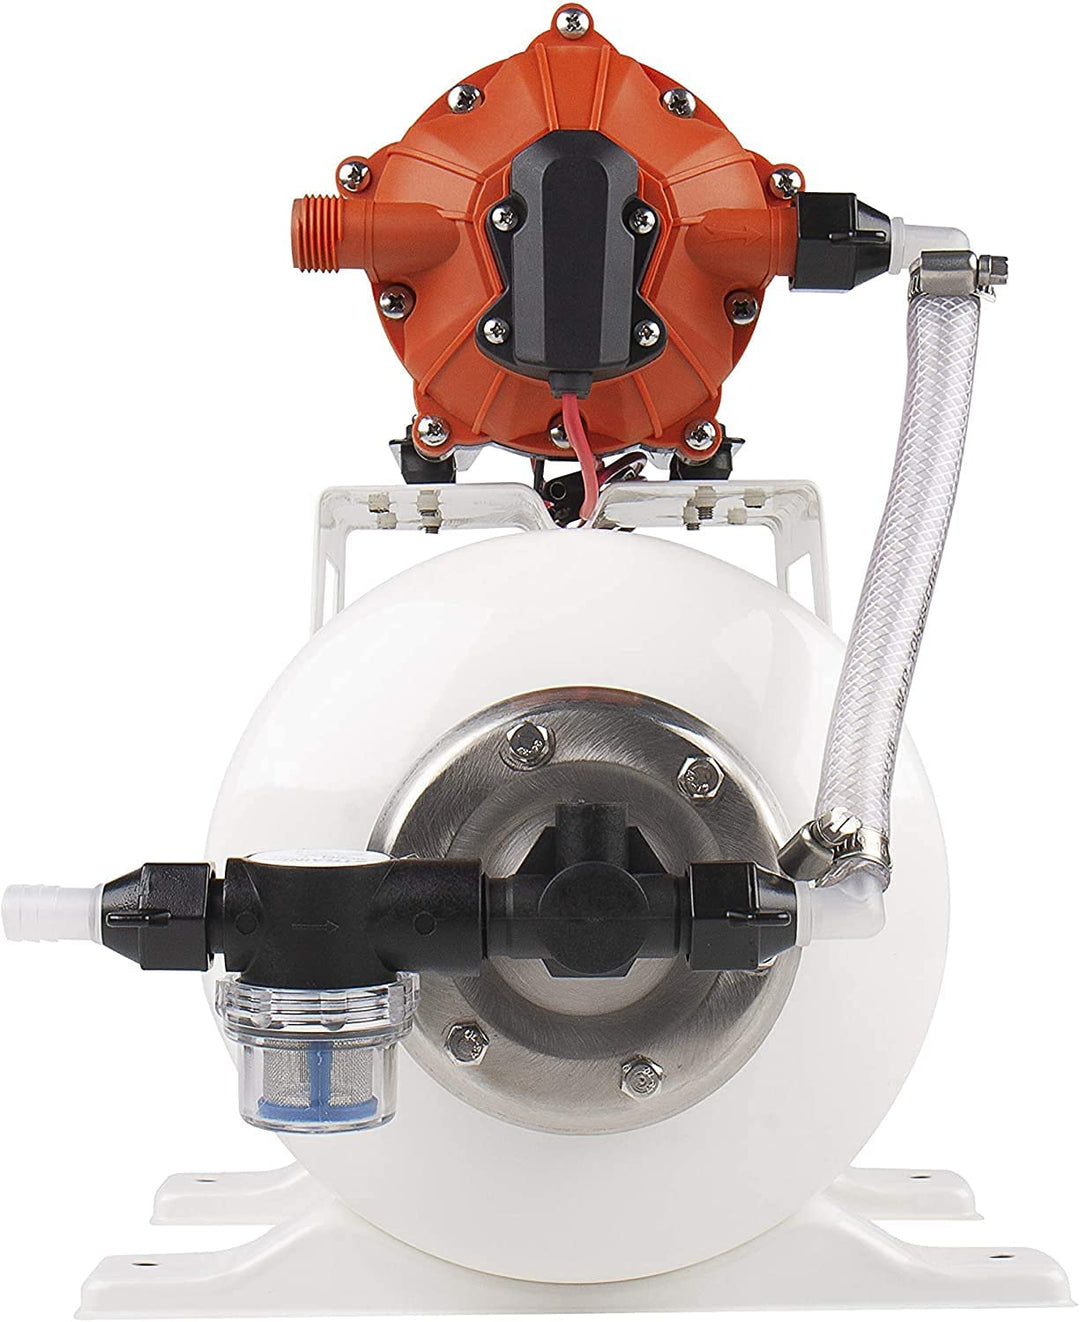 SEAFLO 8L Accumulator Pressure Boost System 12V